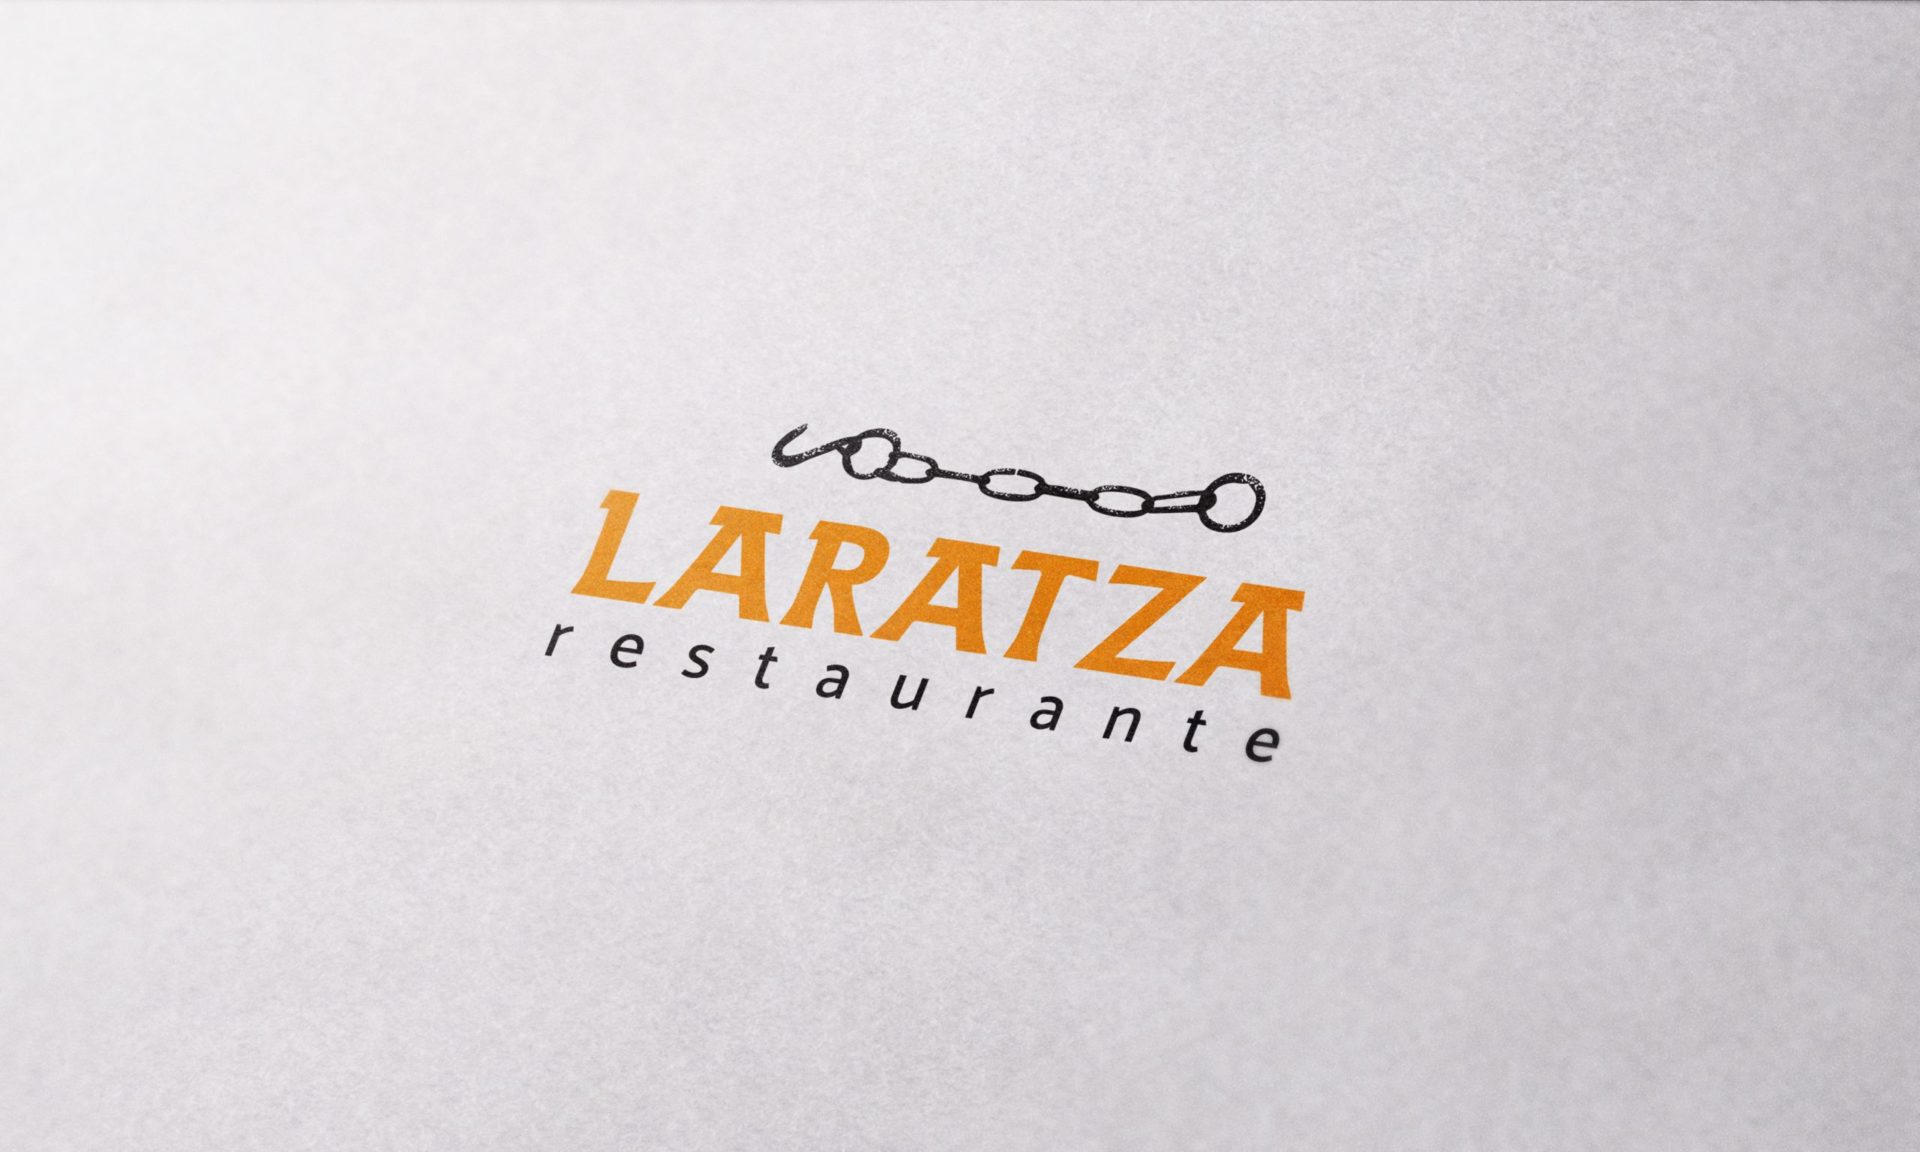 laratza_1